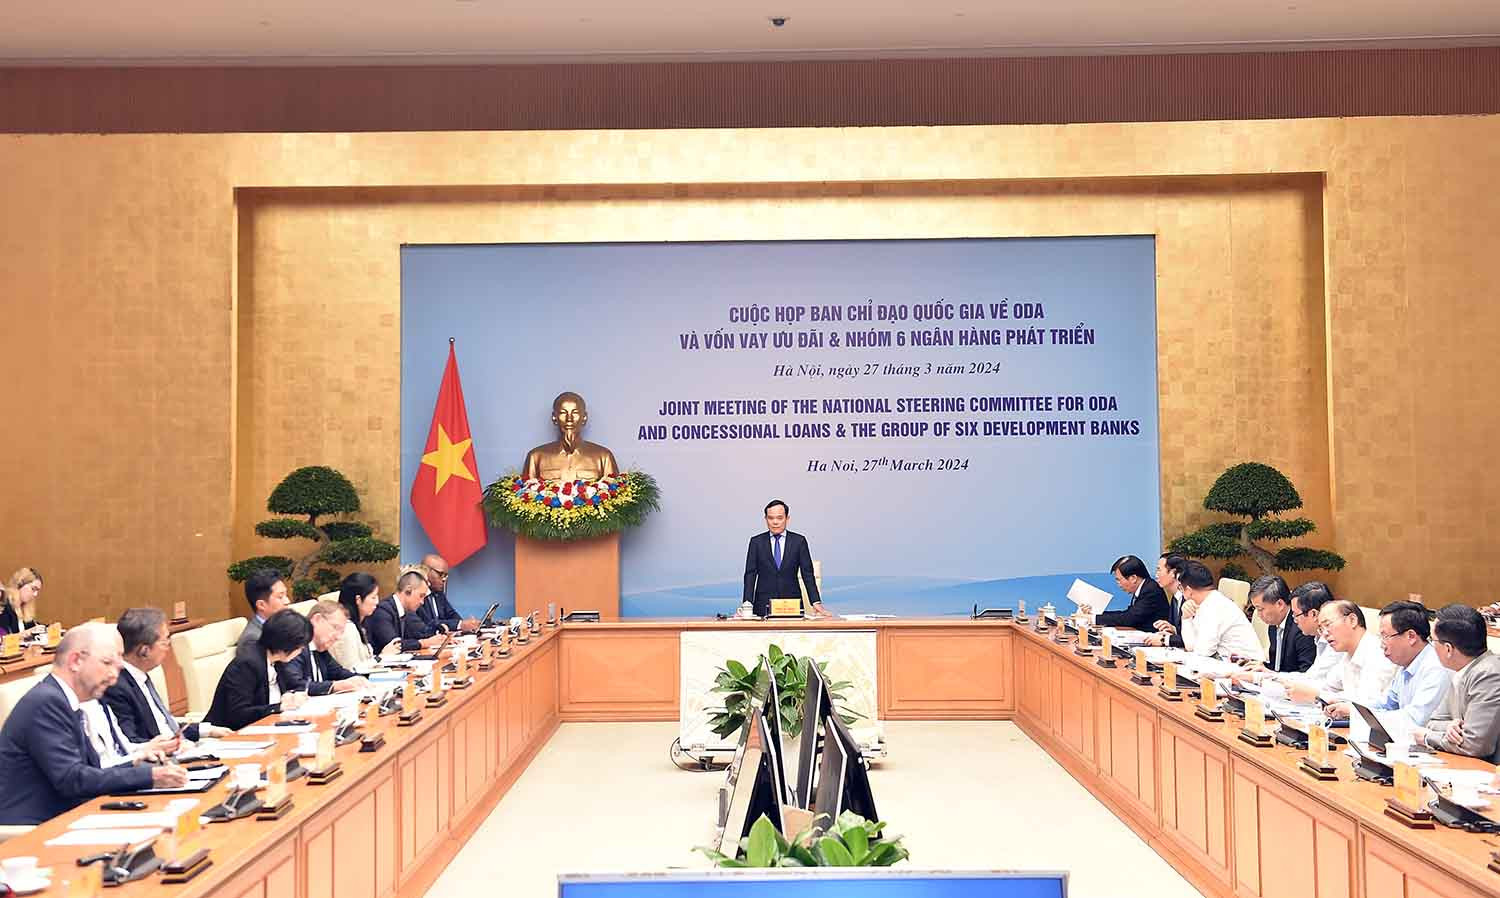 Việt Nam và các nhà tài trợ đồng thuận về sự cần thiết phải hài hoà hoá thủ tục- Ảnh 1.